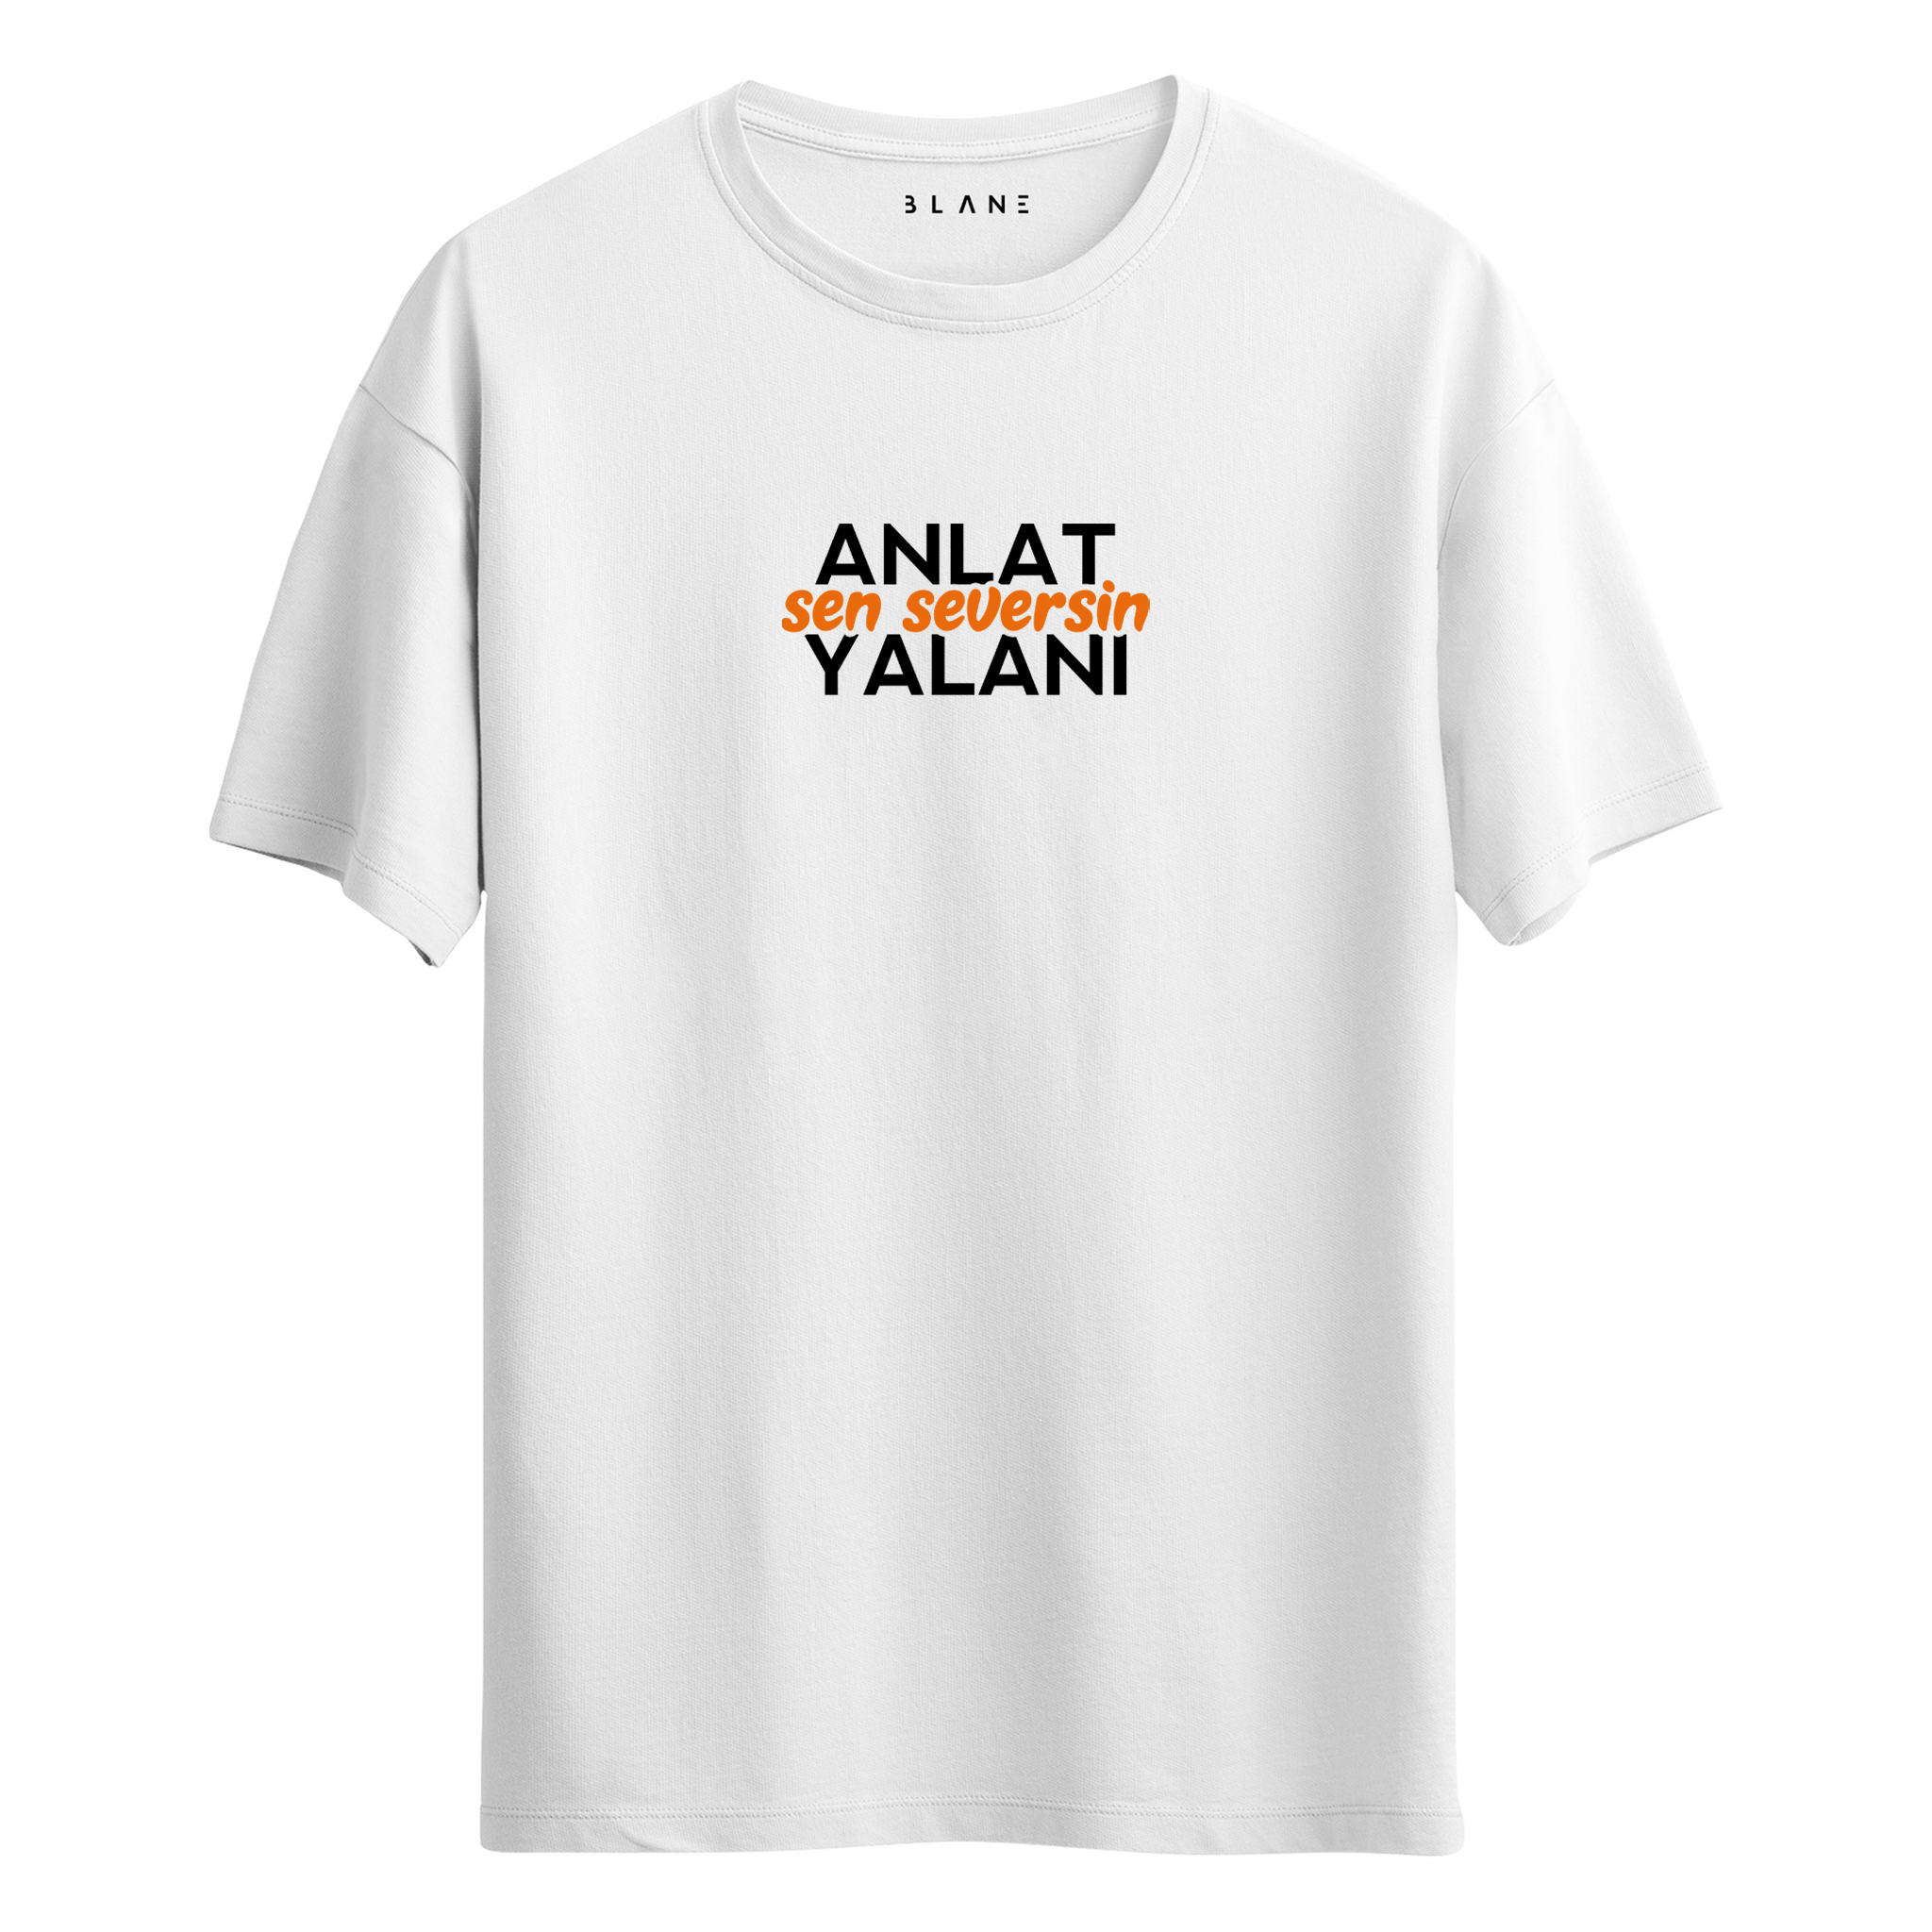 ANLAT SEN SEVERSİN YALANI - T-Shirt